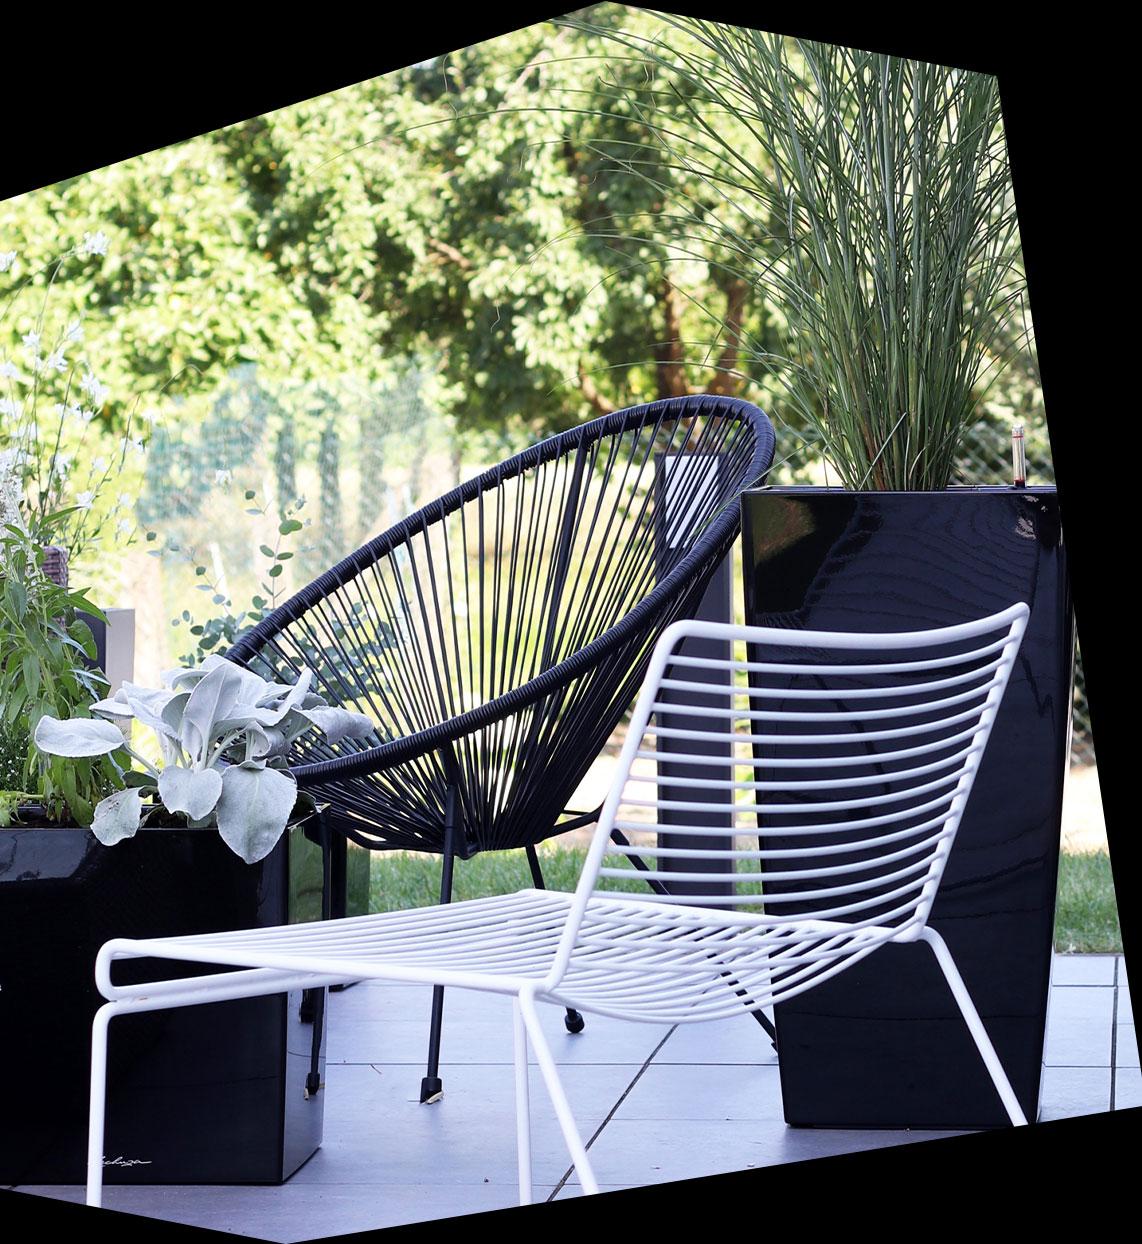 Fioriera nera lucida CUBICO e CUBE su una terrazza con mobili bianchi e neri in acciaio tubolare